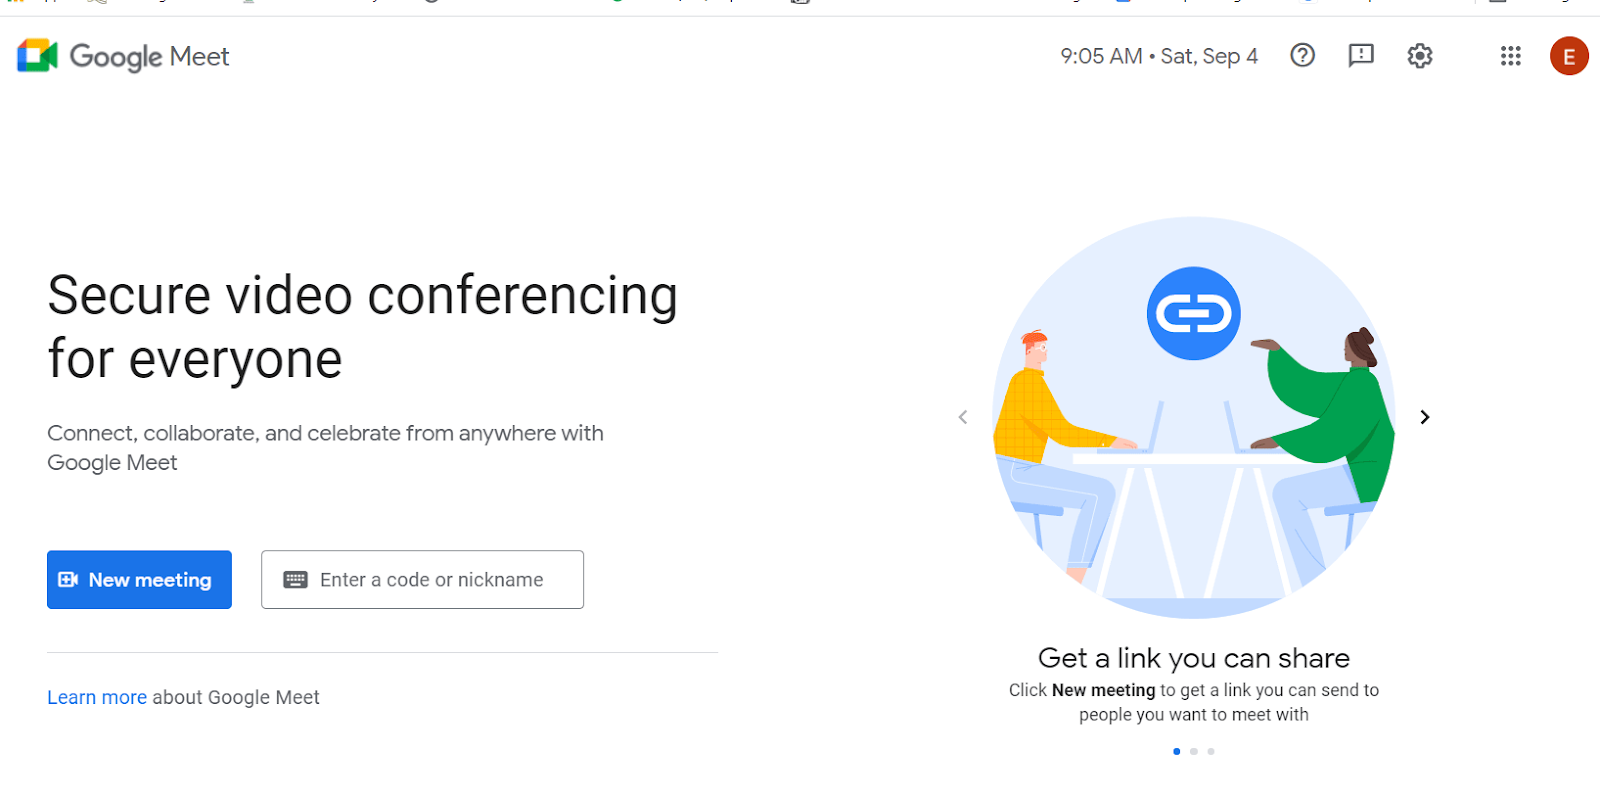 Google Meet meeting management software